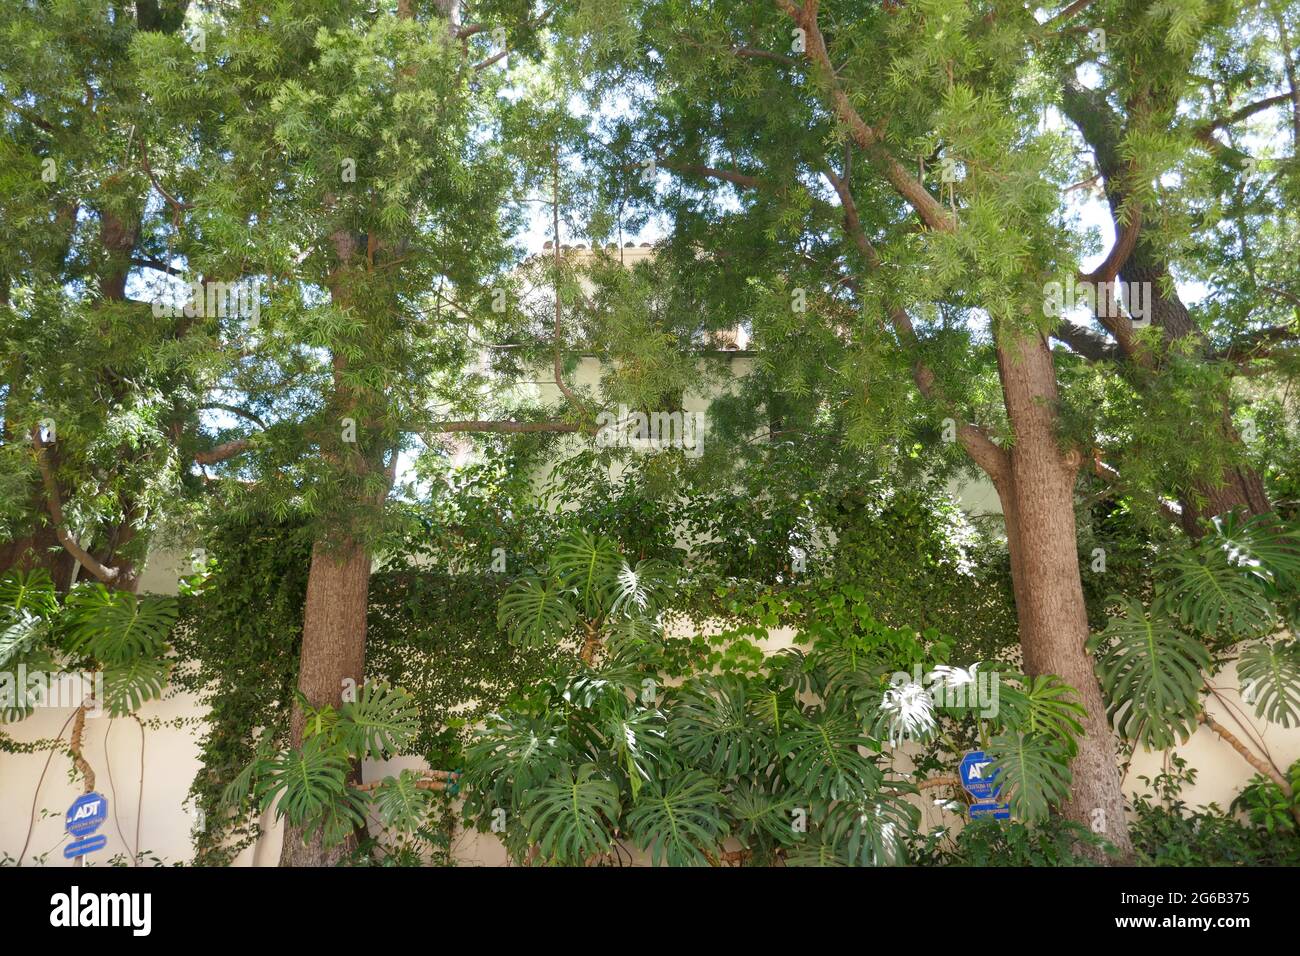 Los Angeles, Kalifornien, USA 4. Juli 2021 EIN allgemeiner Blick auf die Atmosphäre von Ida Lupinos früherem Haus/Haus in Hollywood Hills am 4. Juli 2021 in Los Angeles, Kalifornien, USA. Foto von Barry King/Alamy Stockfoto Stockfoto